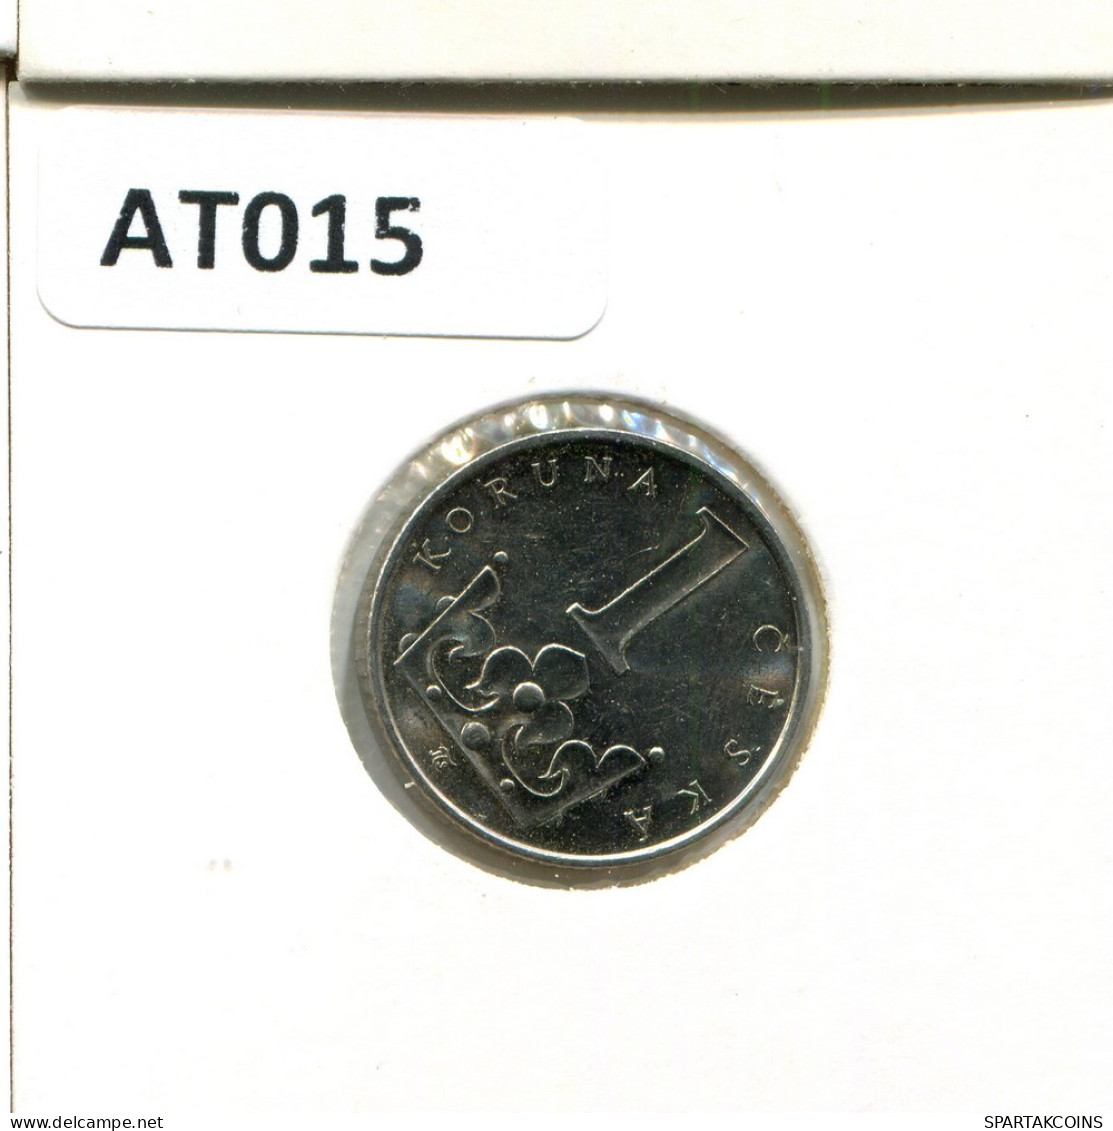 1 KORUNA 2000 CZECH REPUBLIC Coin #AT015.U.A - Czech Republic